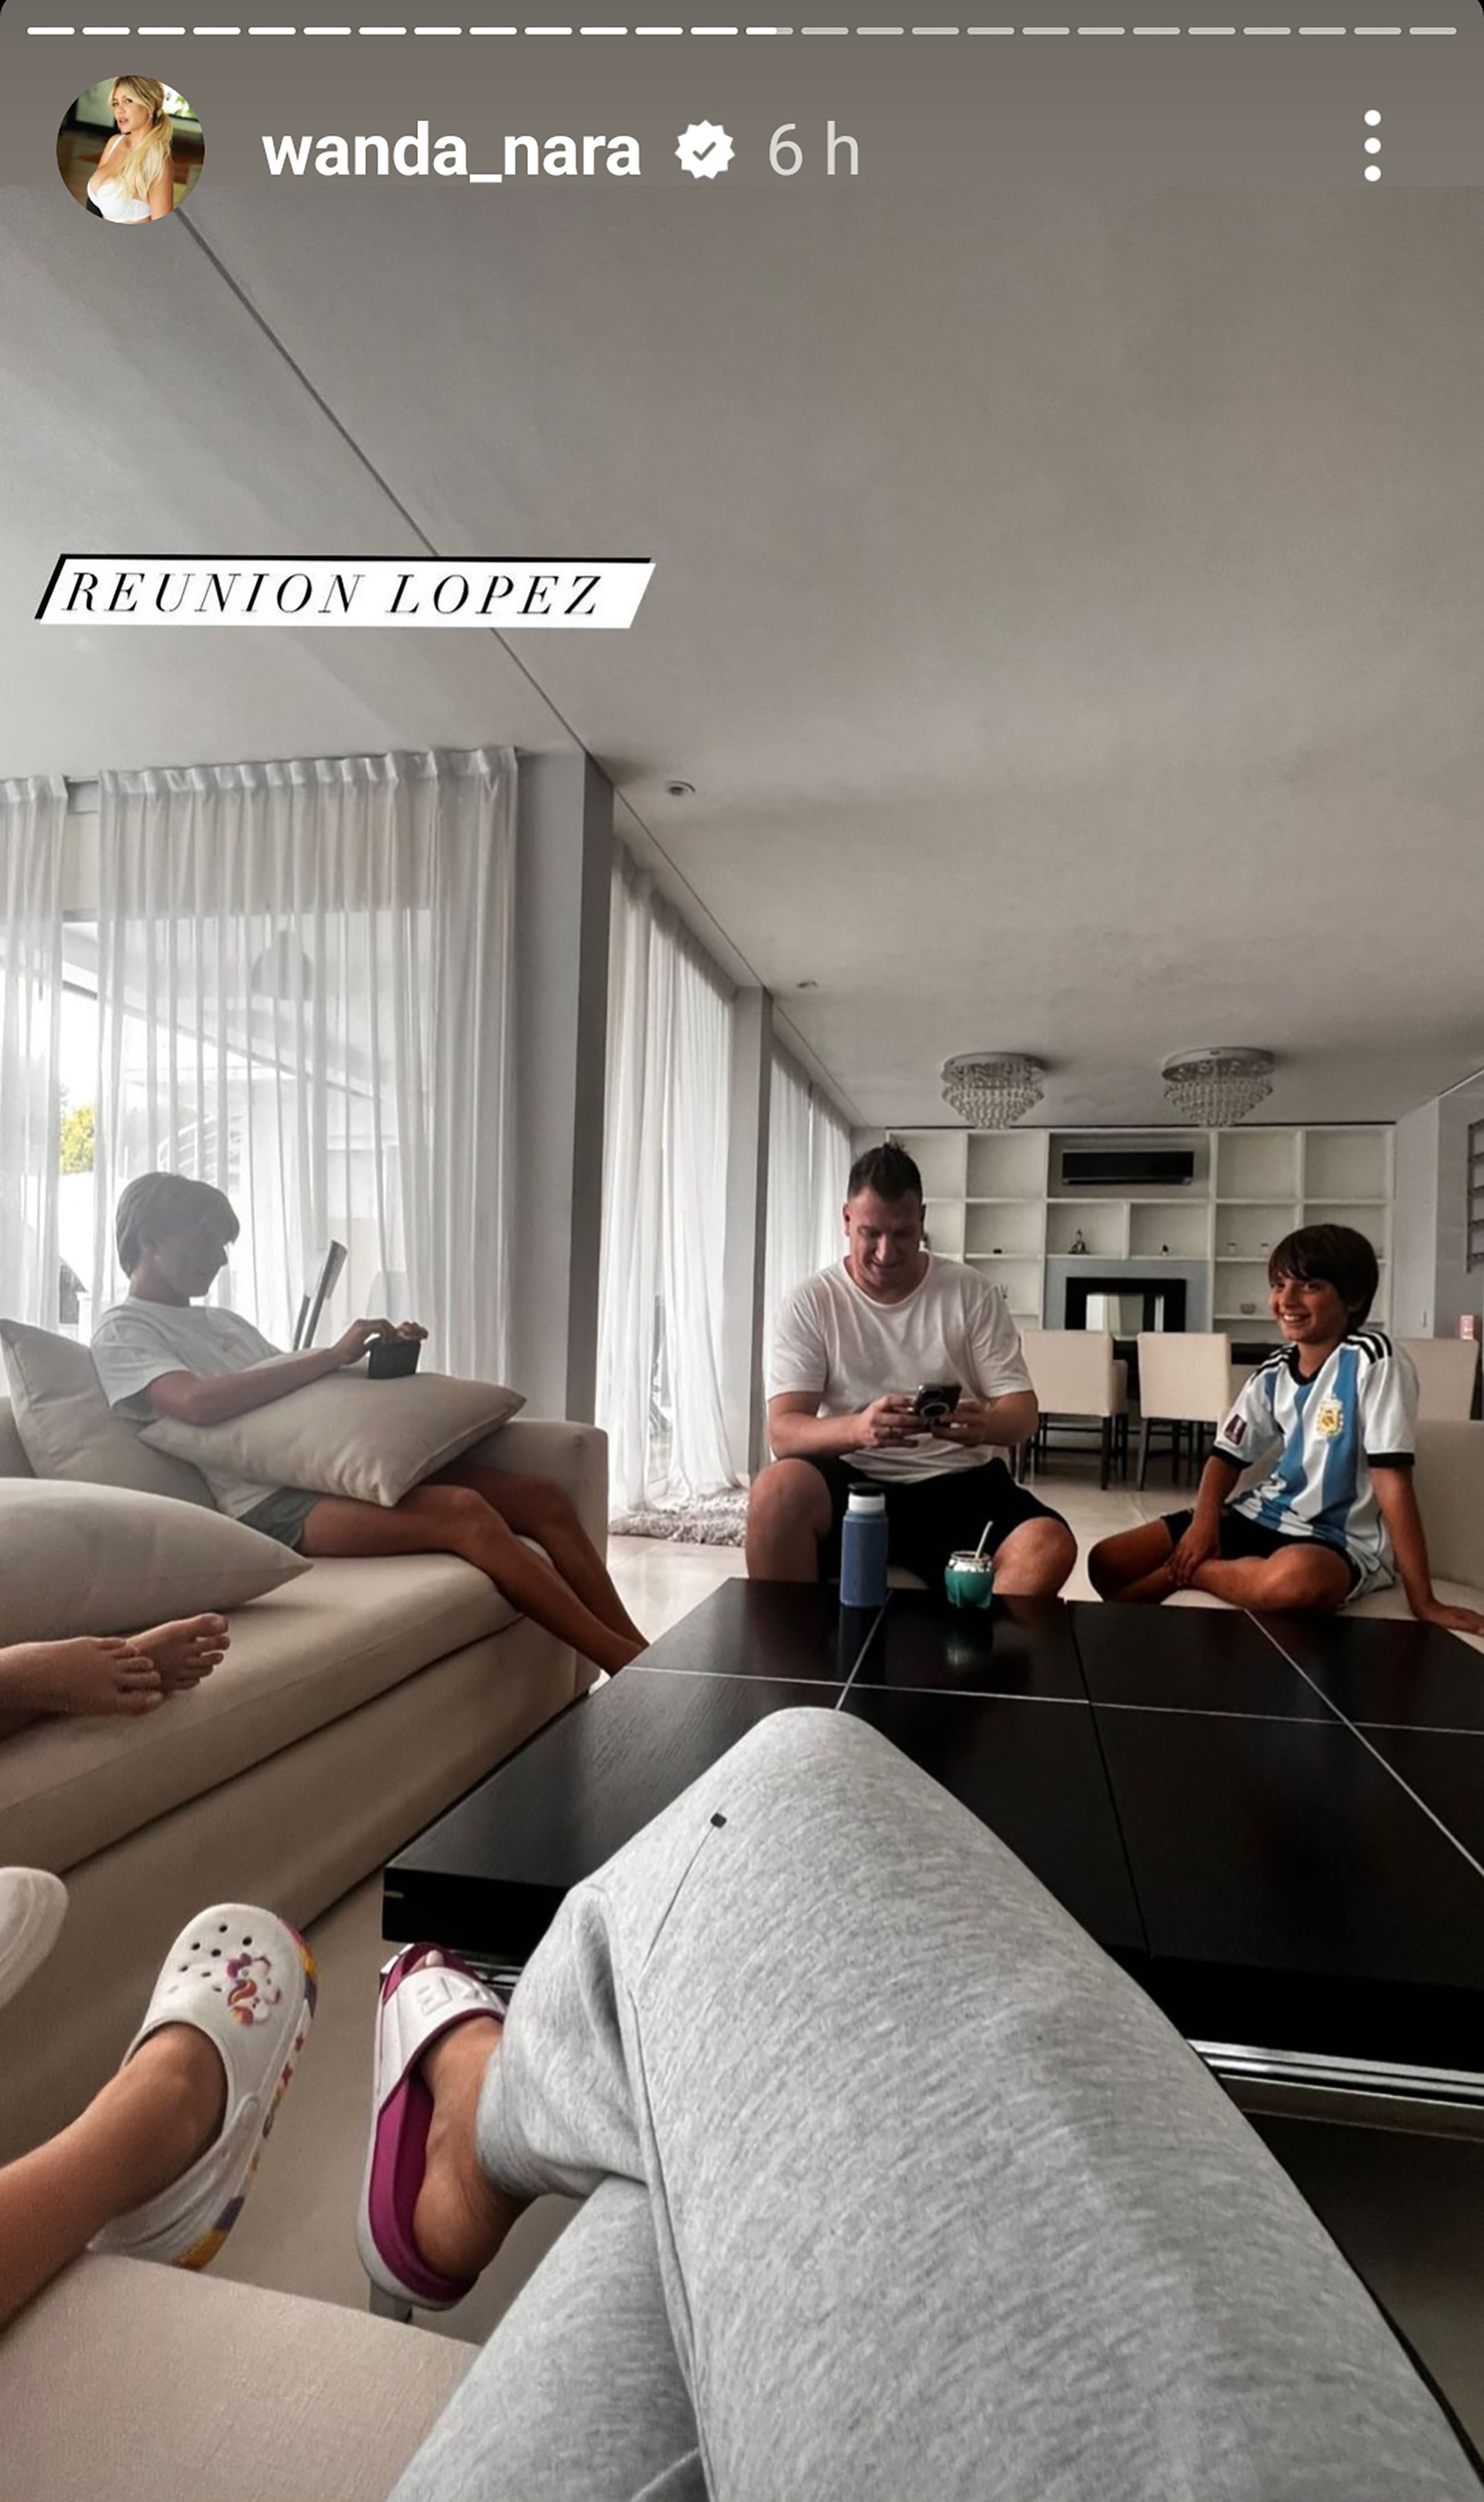 Maxi López en la casa de Wanda Nara junto a sus hijos (Instagram)